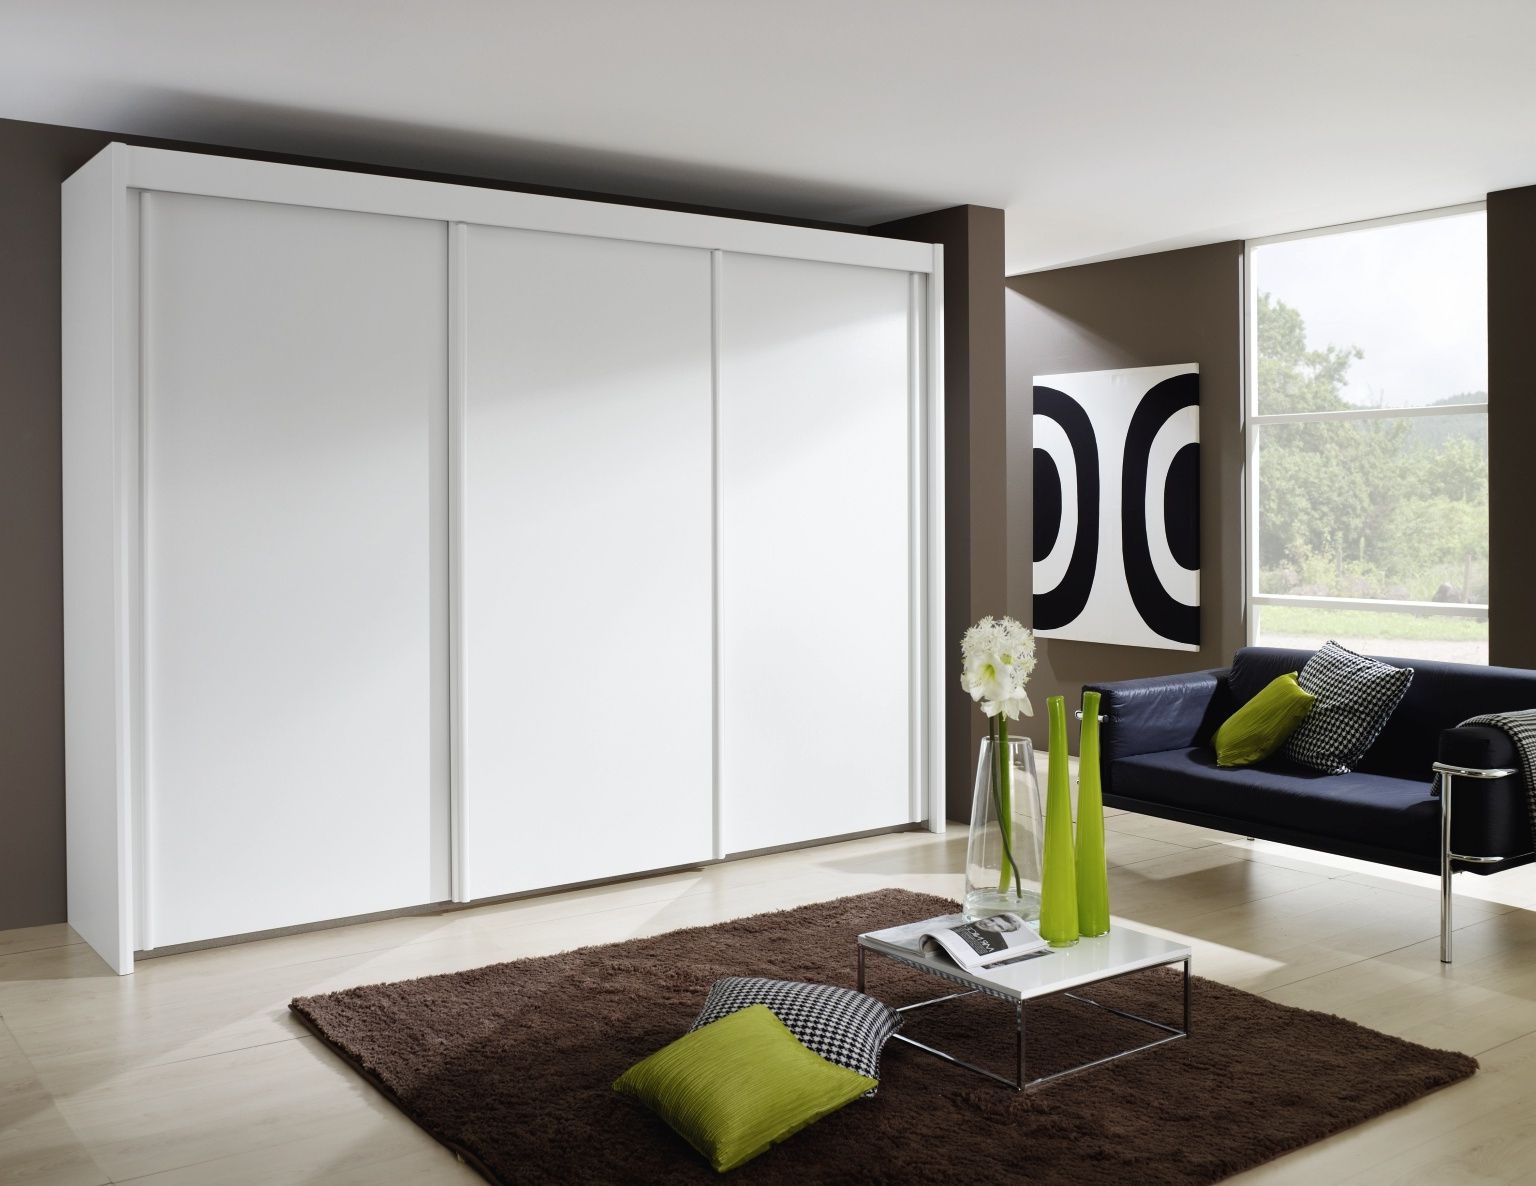 Rauch Imperial 3 Door Sliding Wardrobe In White – W 280cm – Cfs Furniture Uk Regarding Rauch Wardrobes (View 17 of 20)